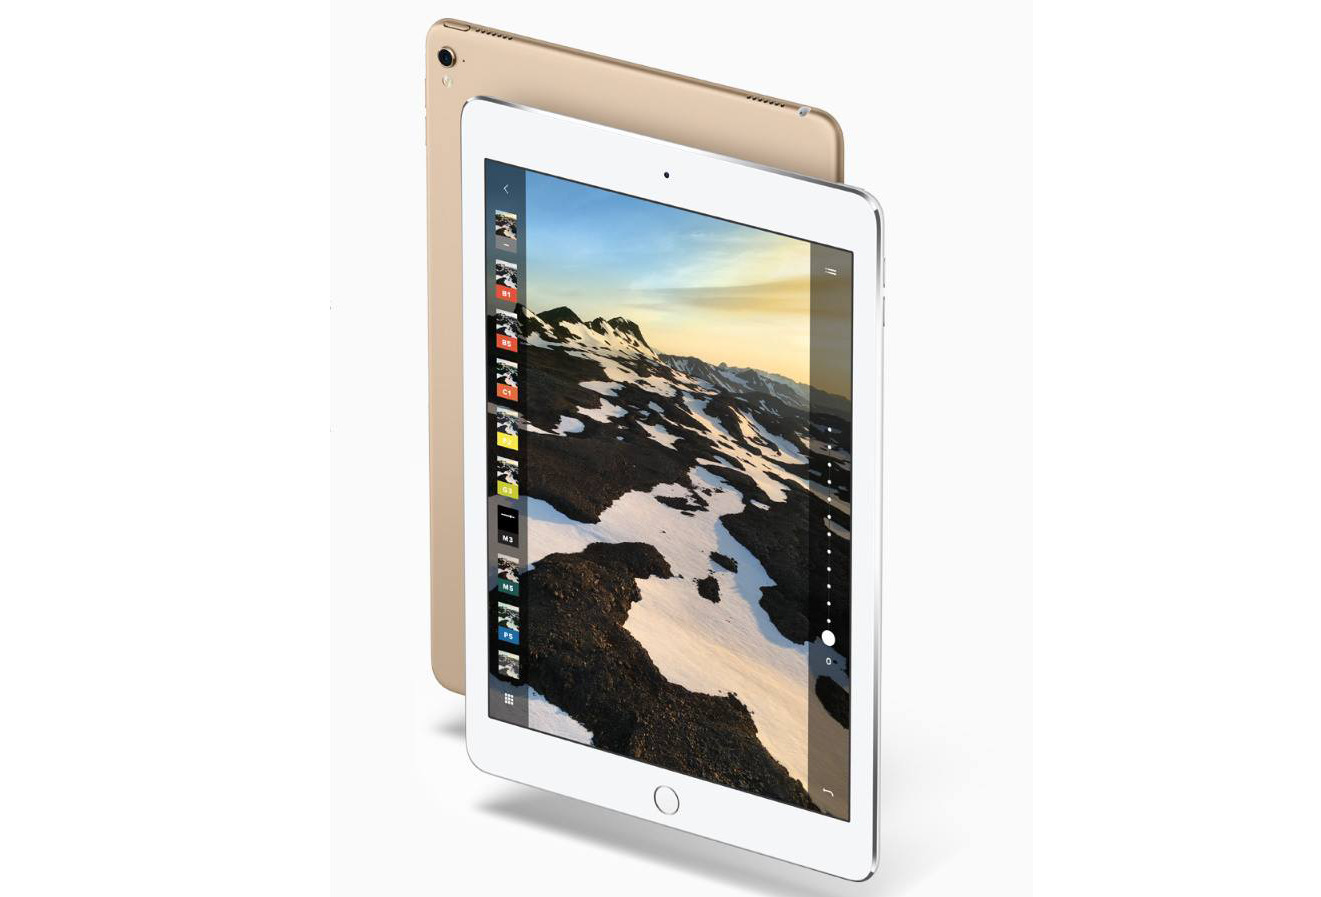 Máy tính bảng iPad Pro Cellular 2015 - Hàng cũ - 32GB, Wifi + 3G/4G, 12.9 inch